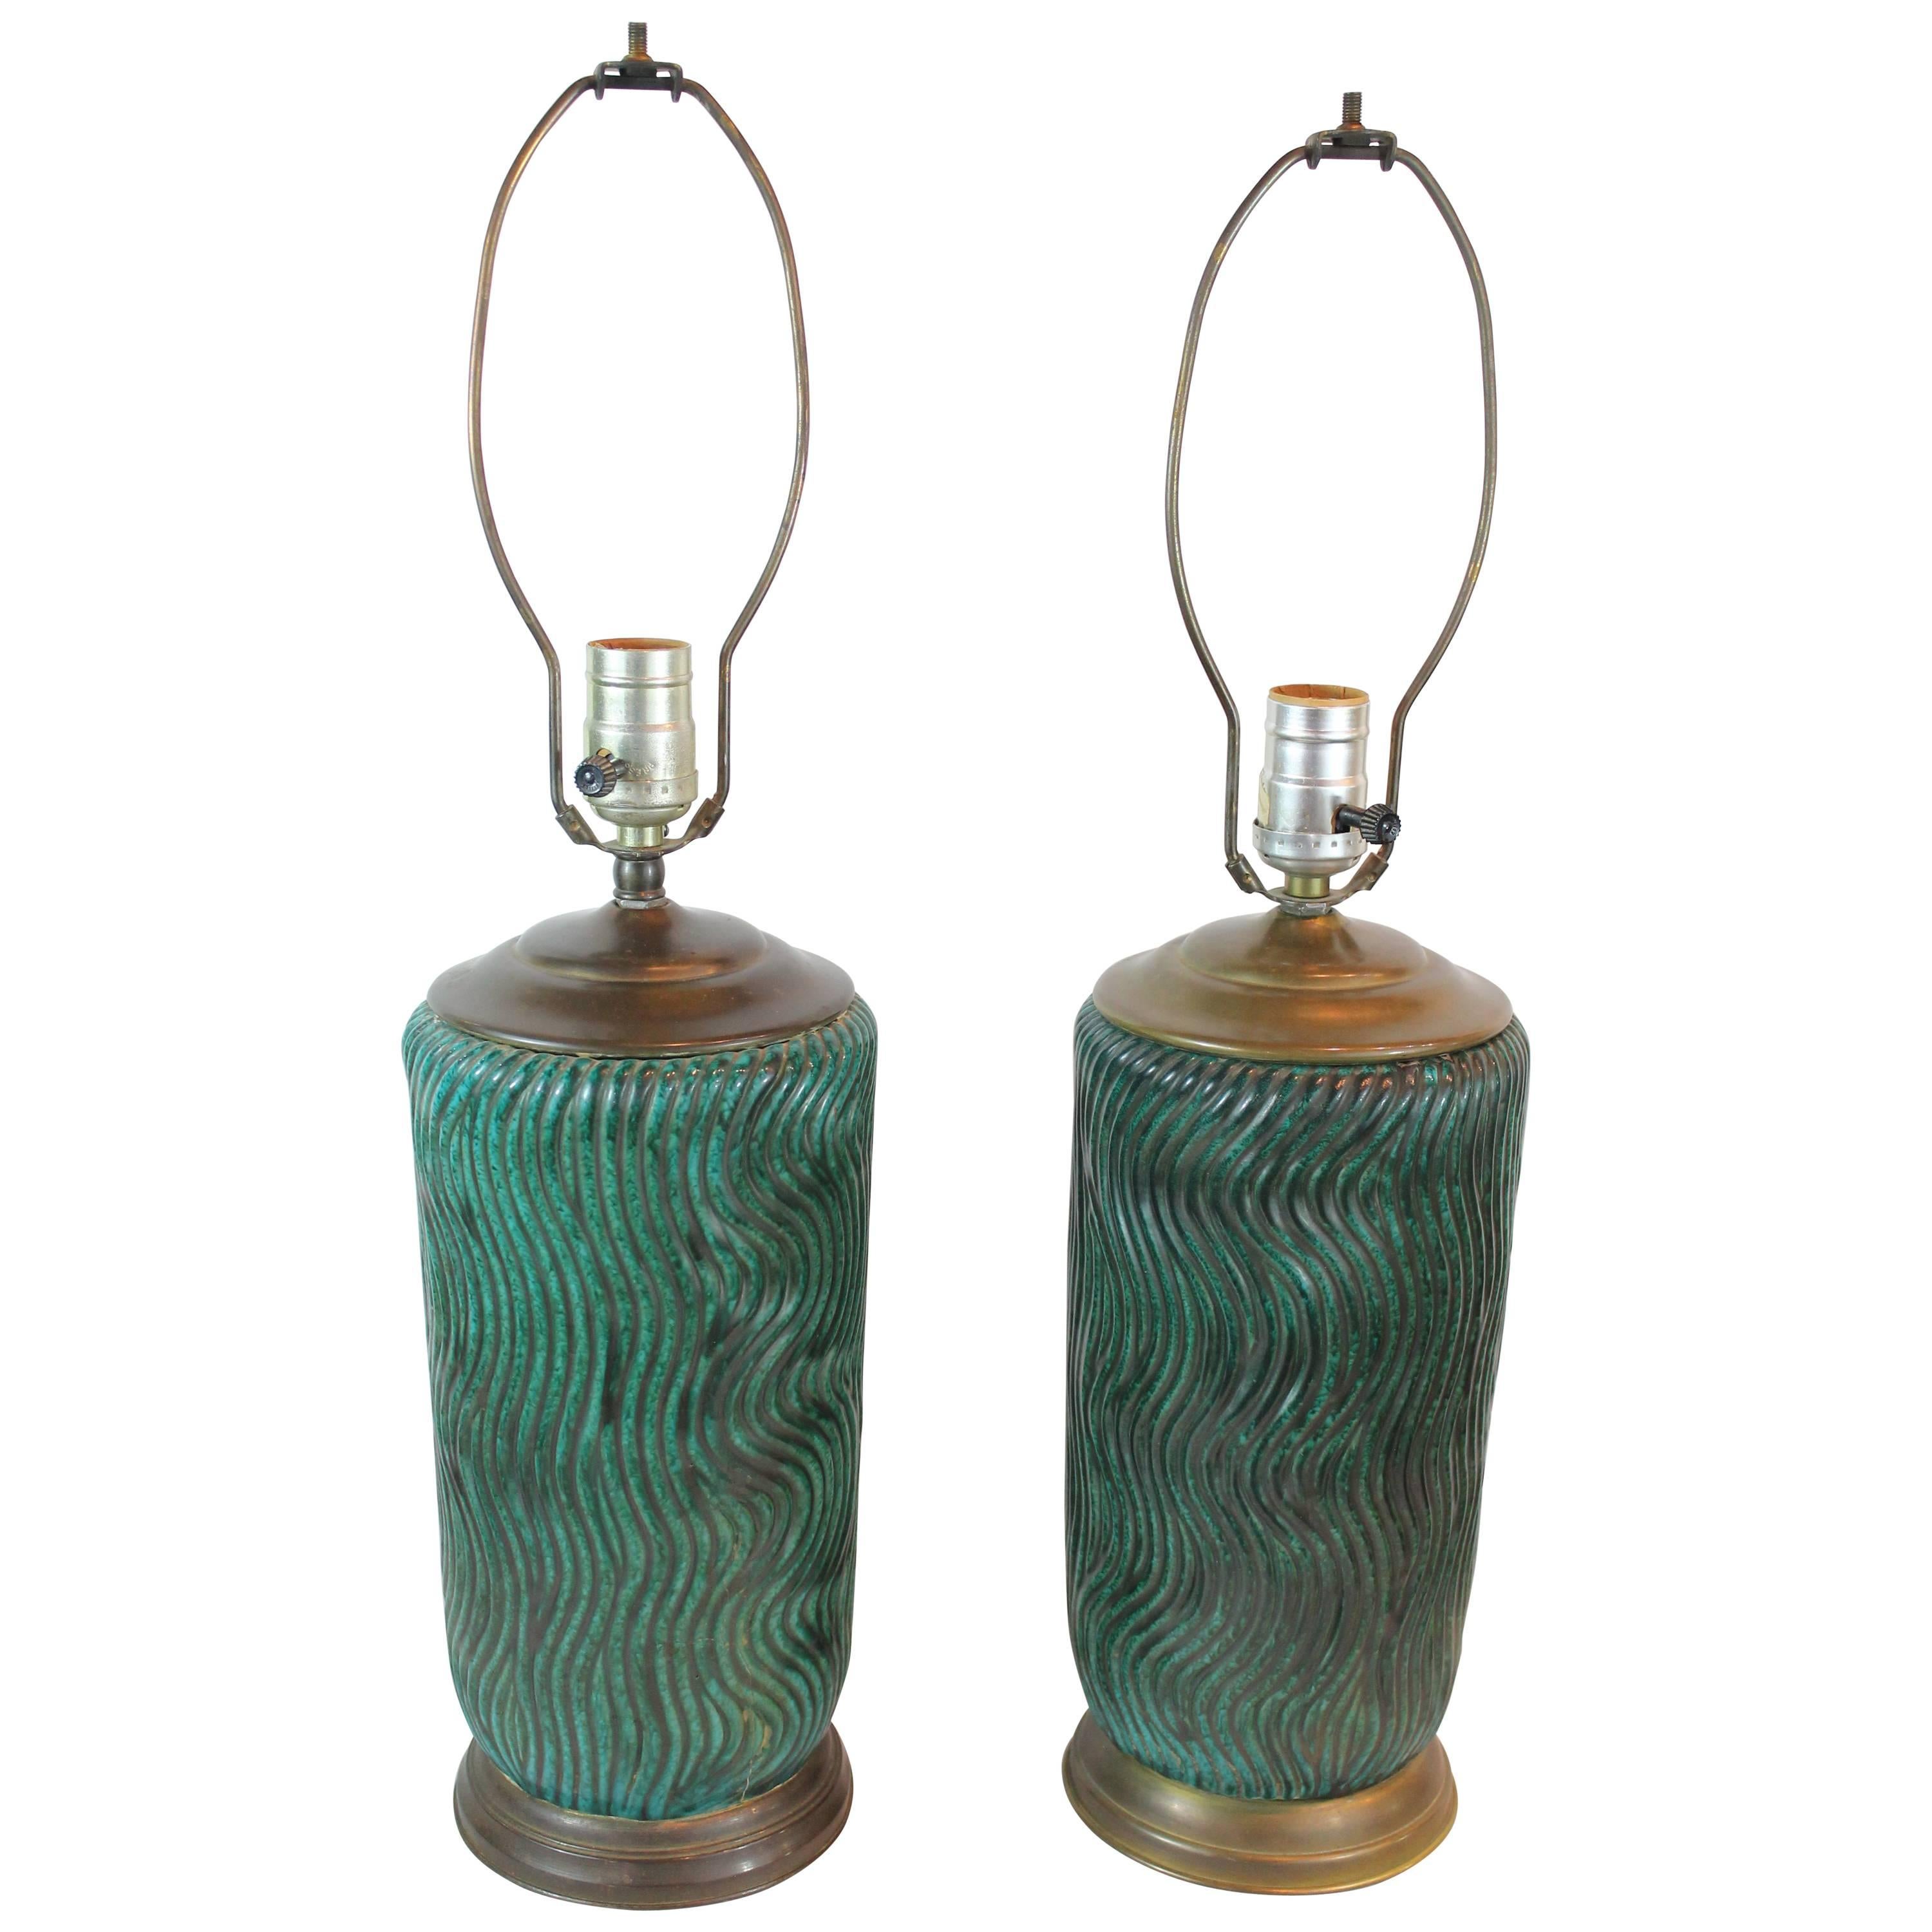 Pair of 1940s Ceramic Wave Design Lamps